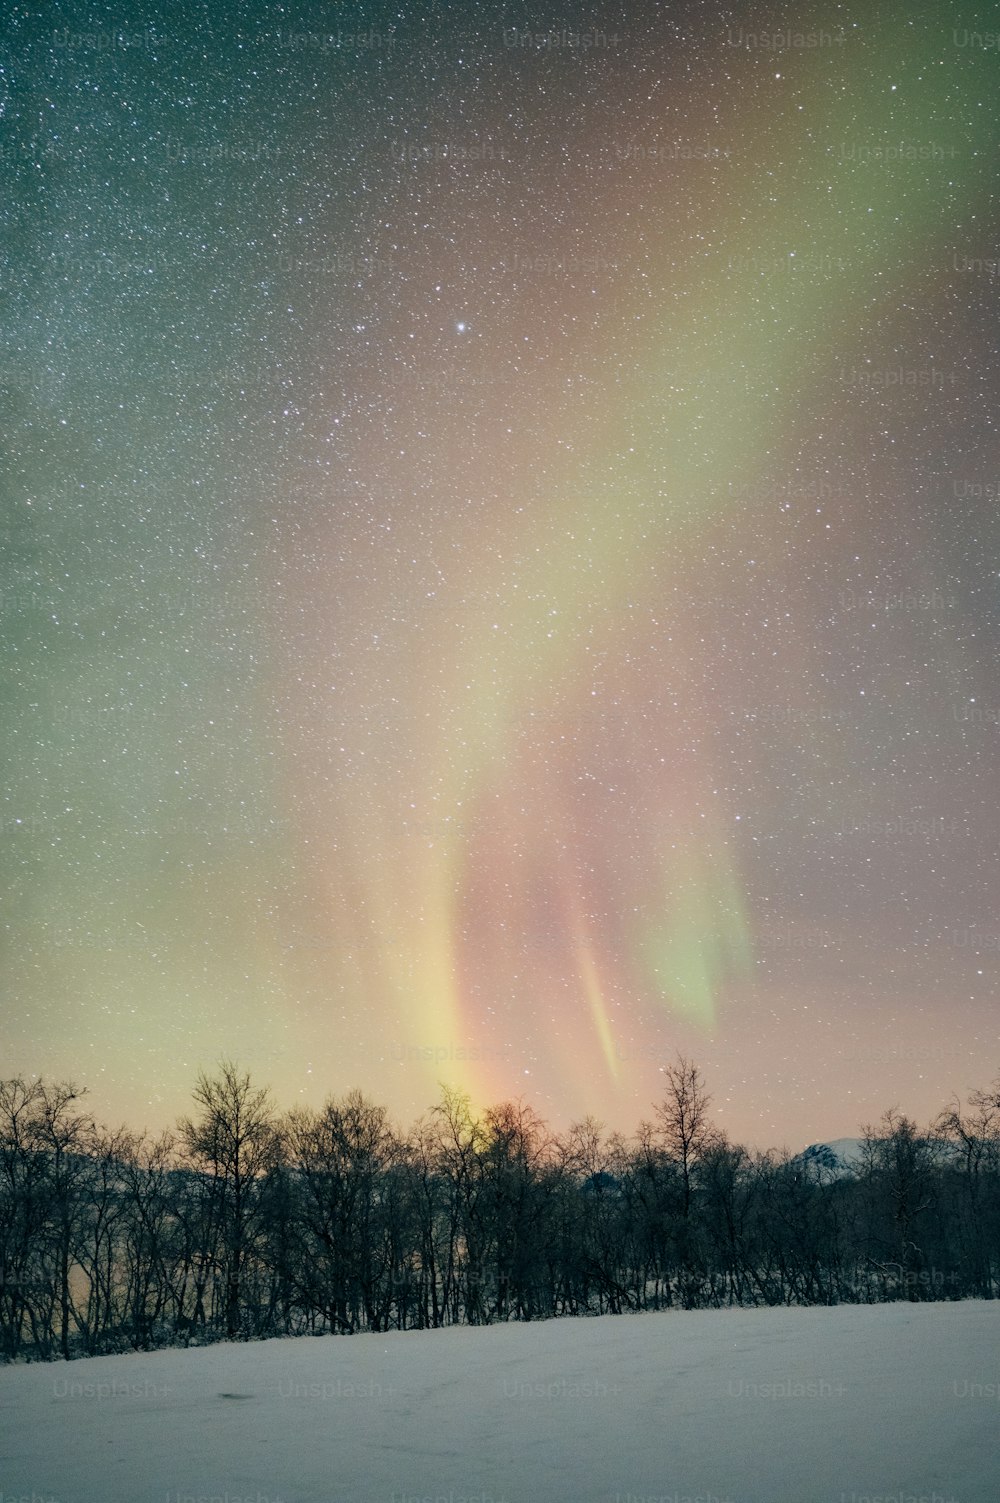 Die Aurora erhob sich am Himmel über ein schneebedecktes Feld